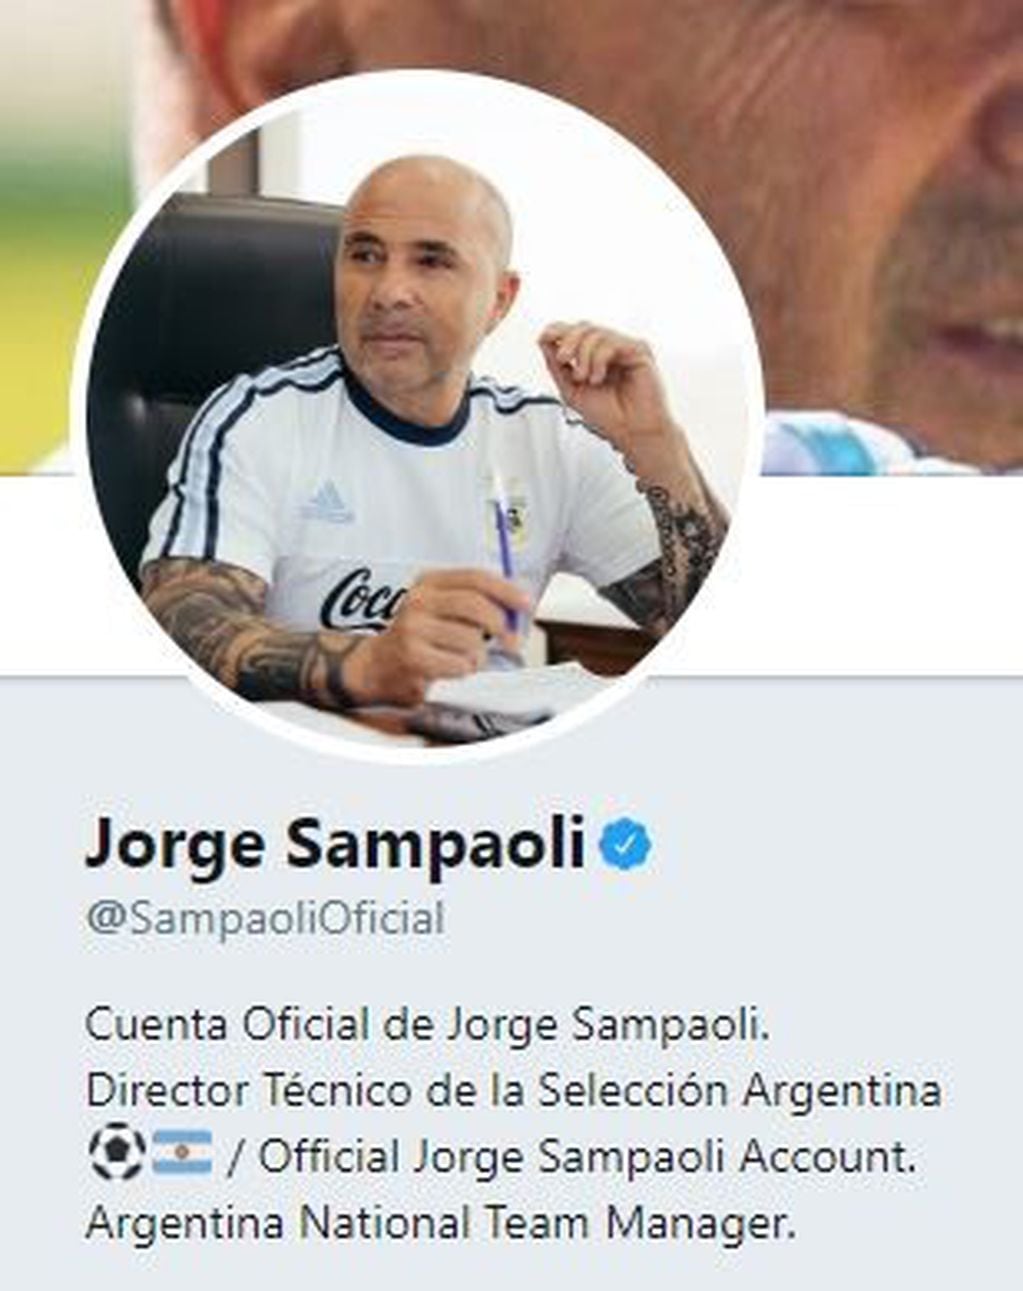 El Twitter de Jorge Sampaoli